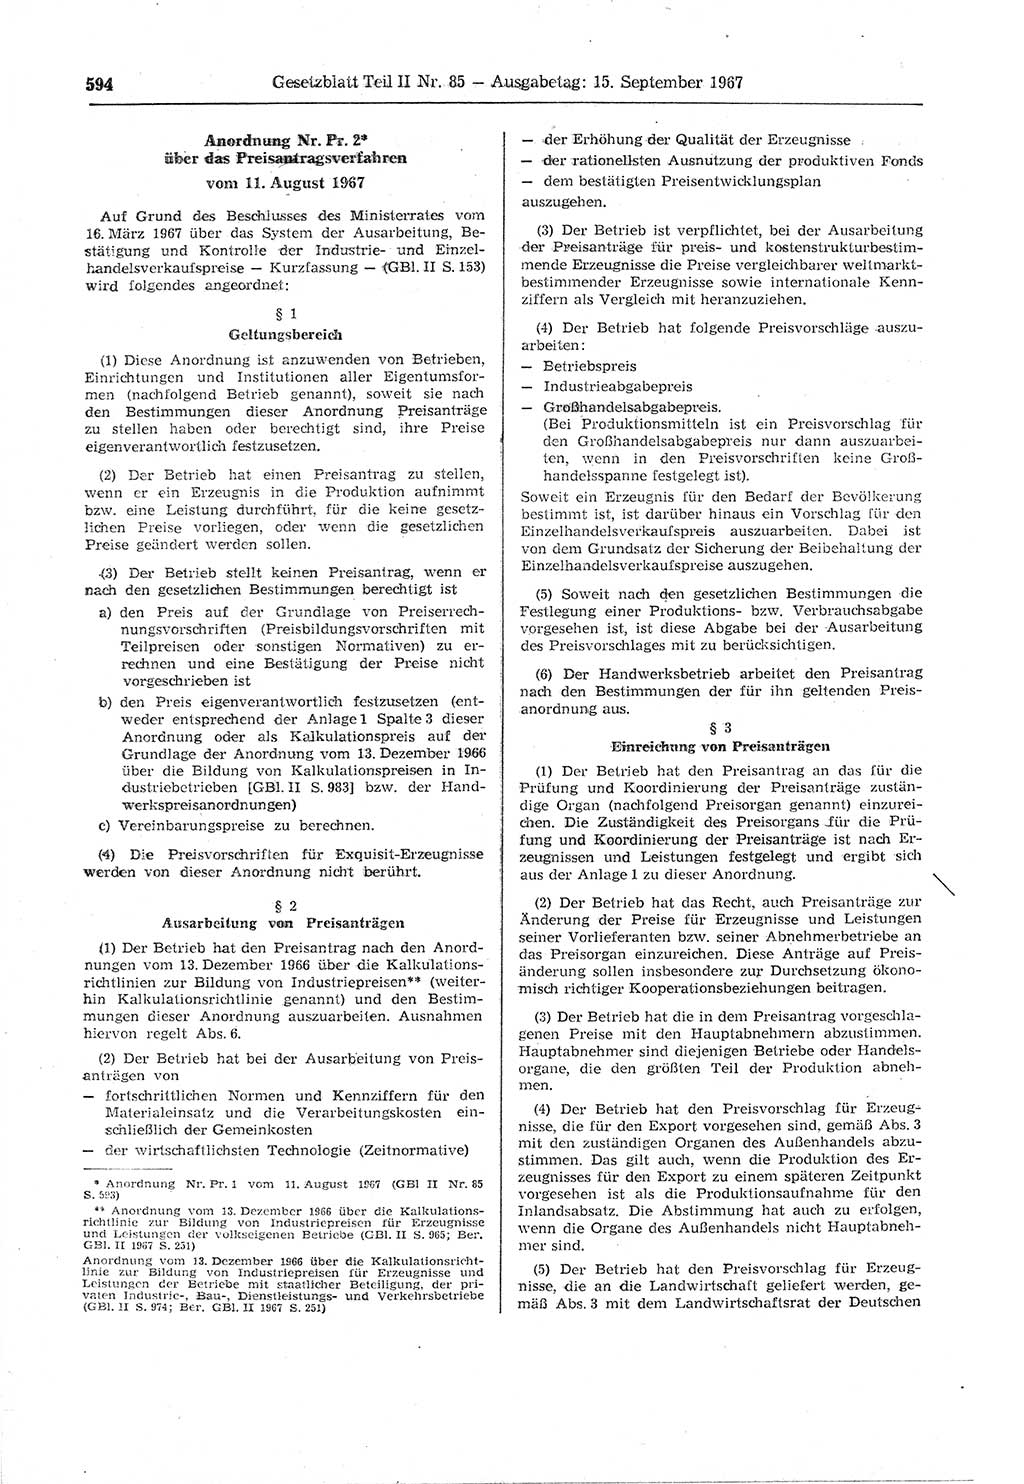 Gesetzblatt (GBl.) der Deutschen Demokratischen Republik (DDR) Teil ⅠⅠ 1967, Seite 594 (GBl. DDR ⅠⅠ 1967, S. 594)